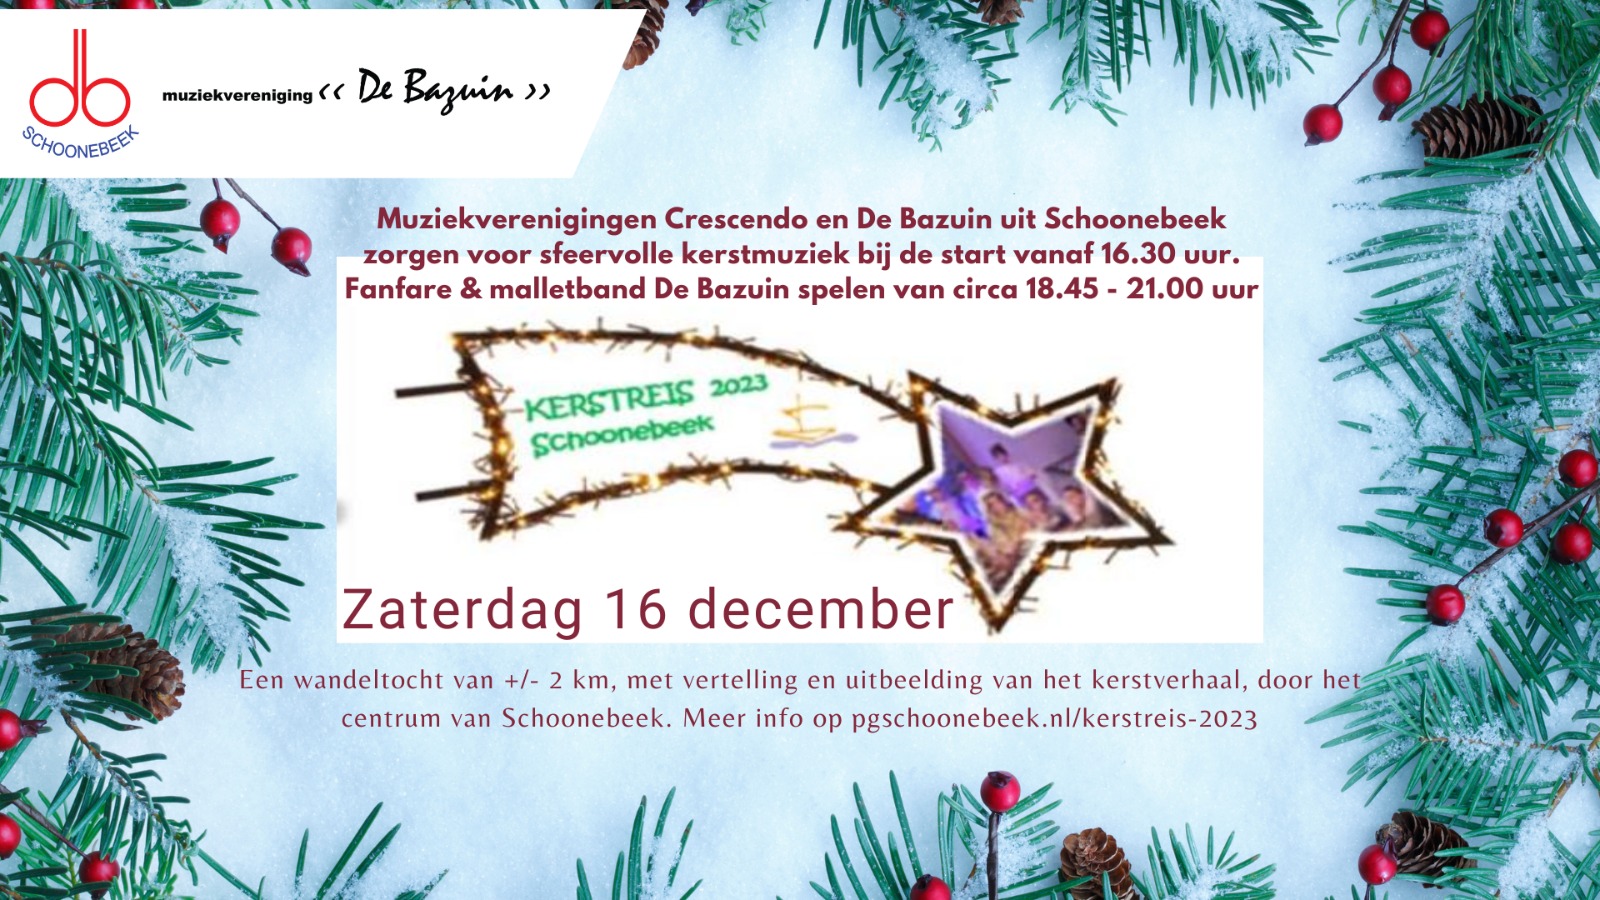 Afbeelding met vallende ster en informatie over de kerstreis 2023 te Schoonebeek